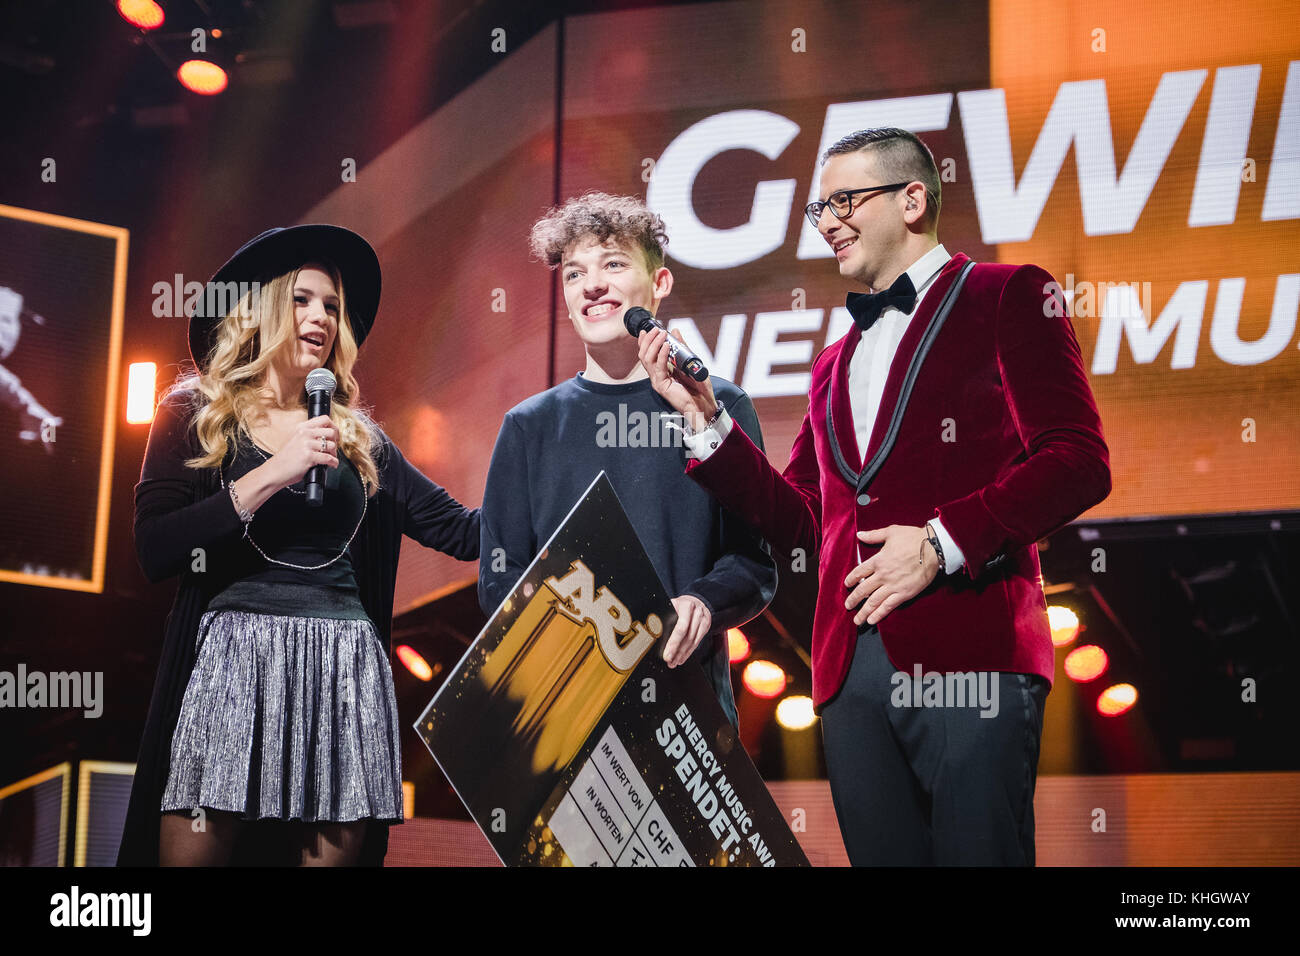 Suisse, Zurich - 17 novembre 2017. Le jeune chanteur suisse Nemo remporte  le prix Energy Music lors de la nuit Energy Star 2017 à Hallenstadion à  Zurich. Nemo est ici vu avec